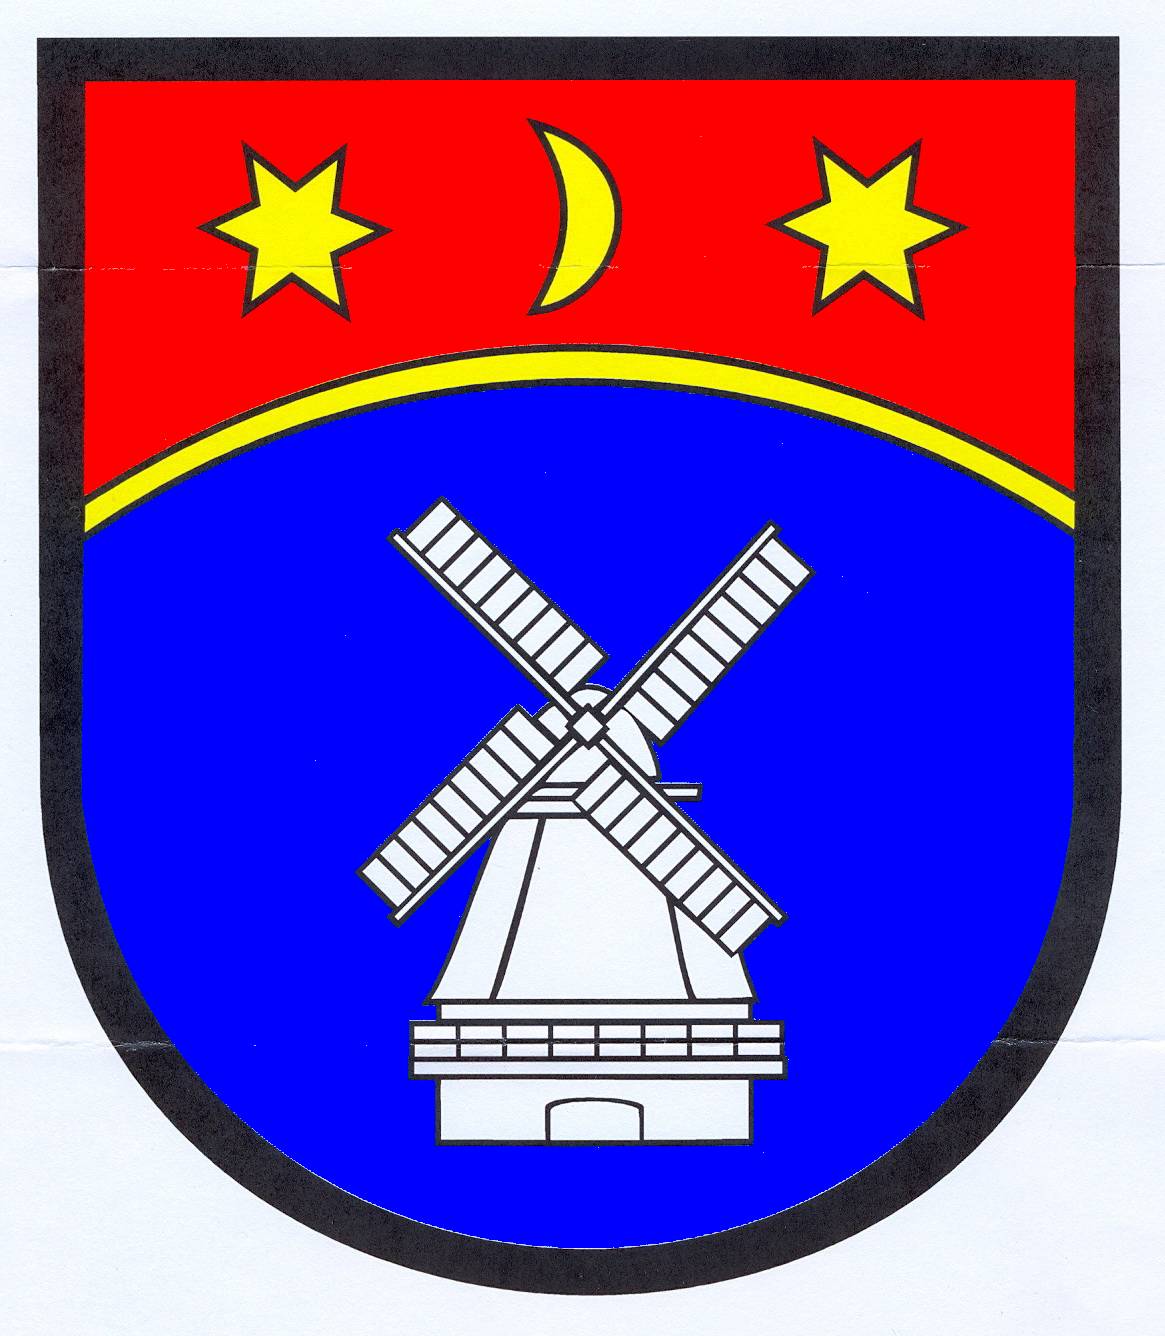 Wappen Gemeinde Rodenäs, Kreis Nordfriesland